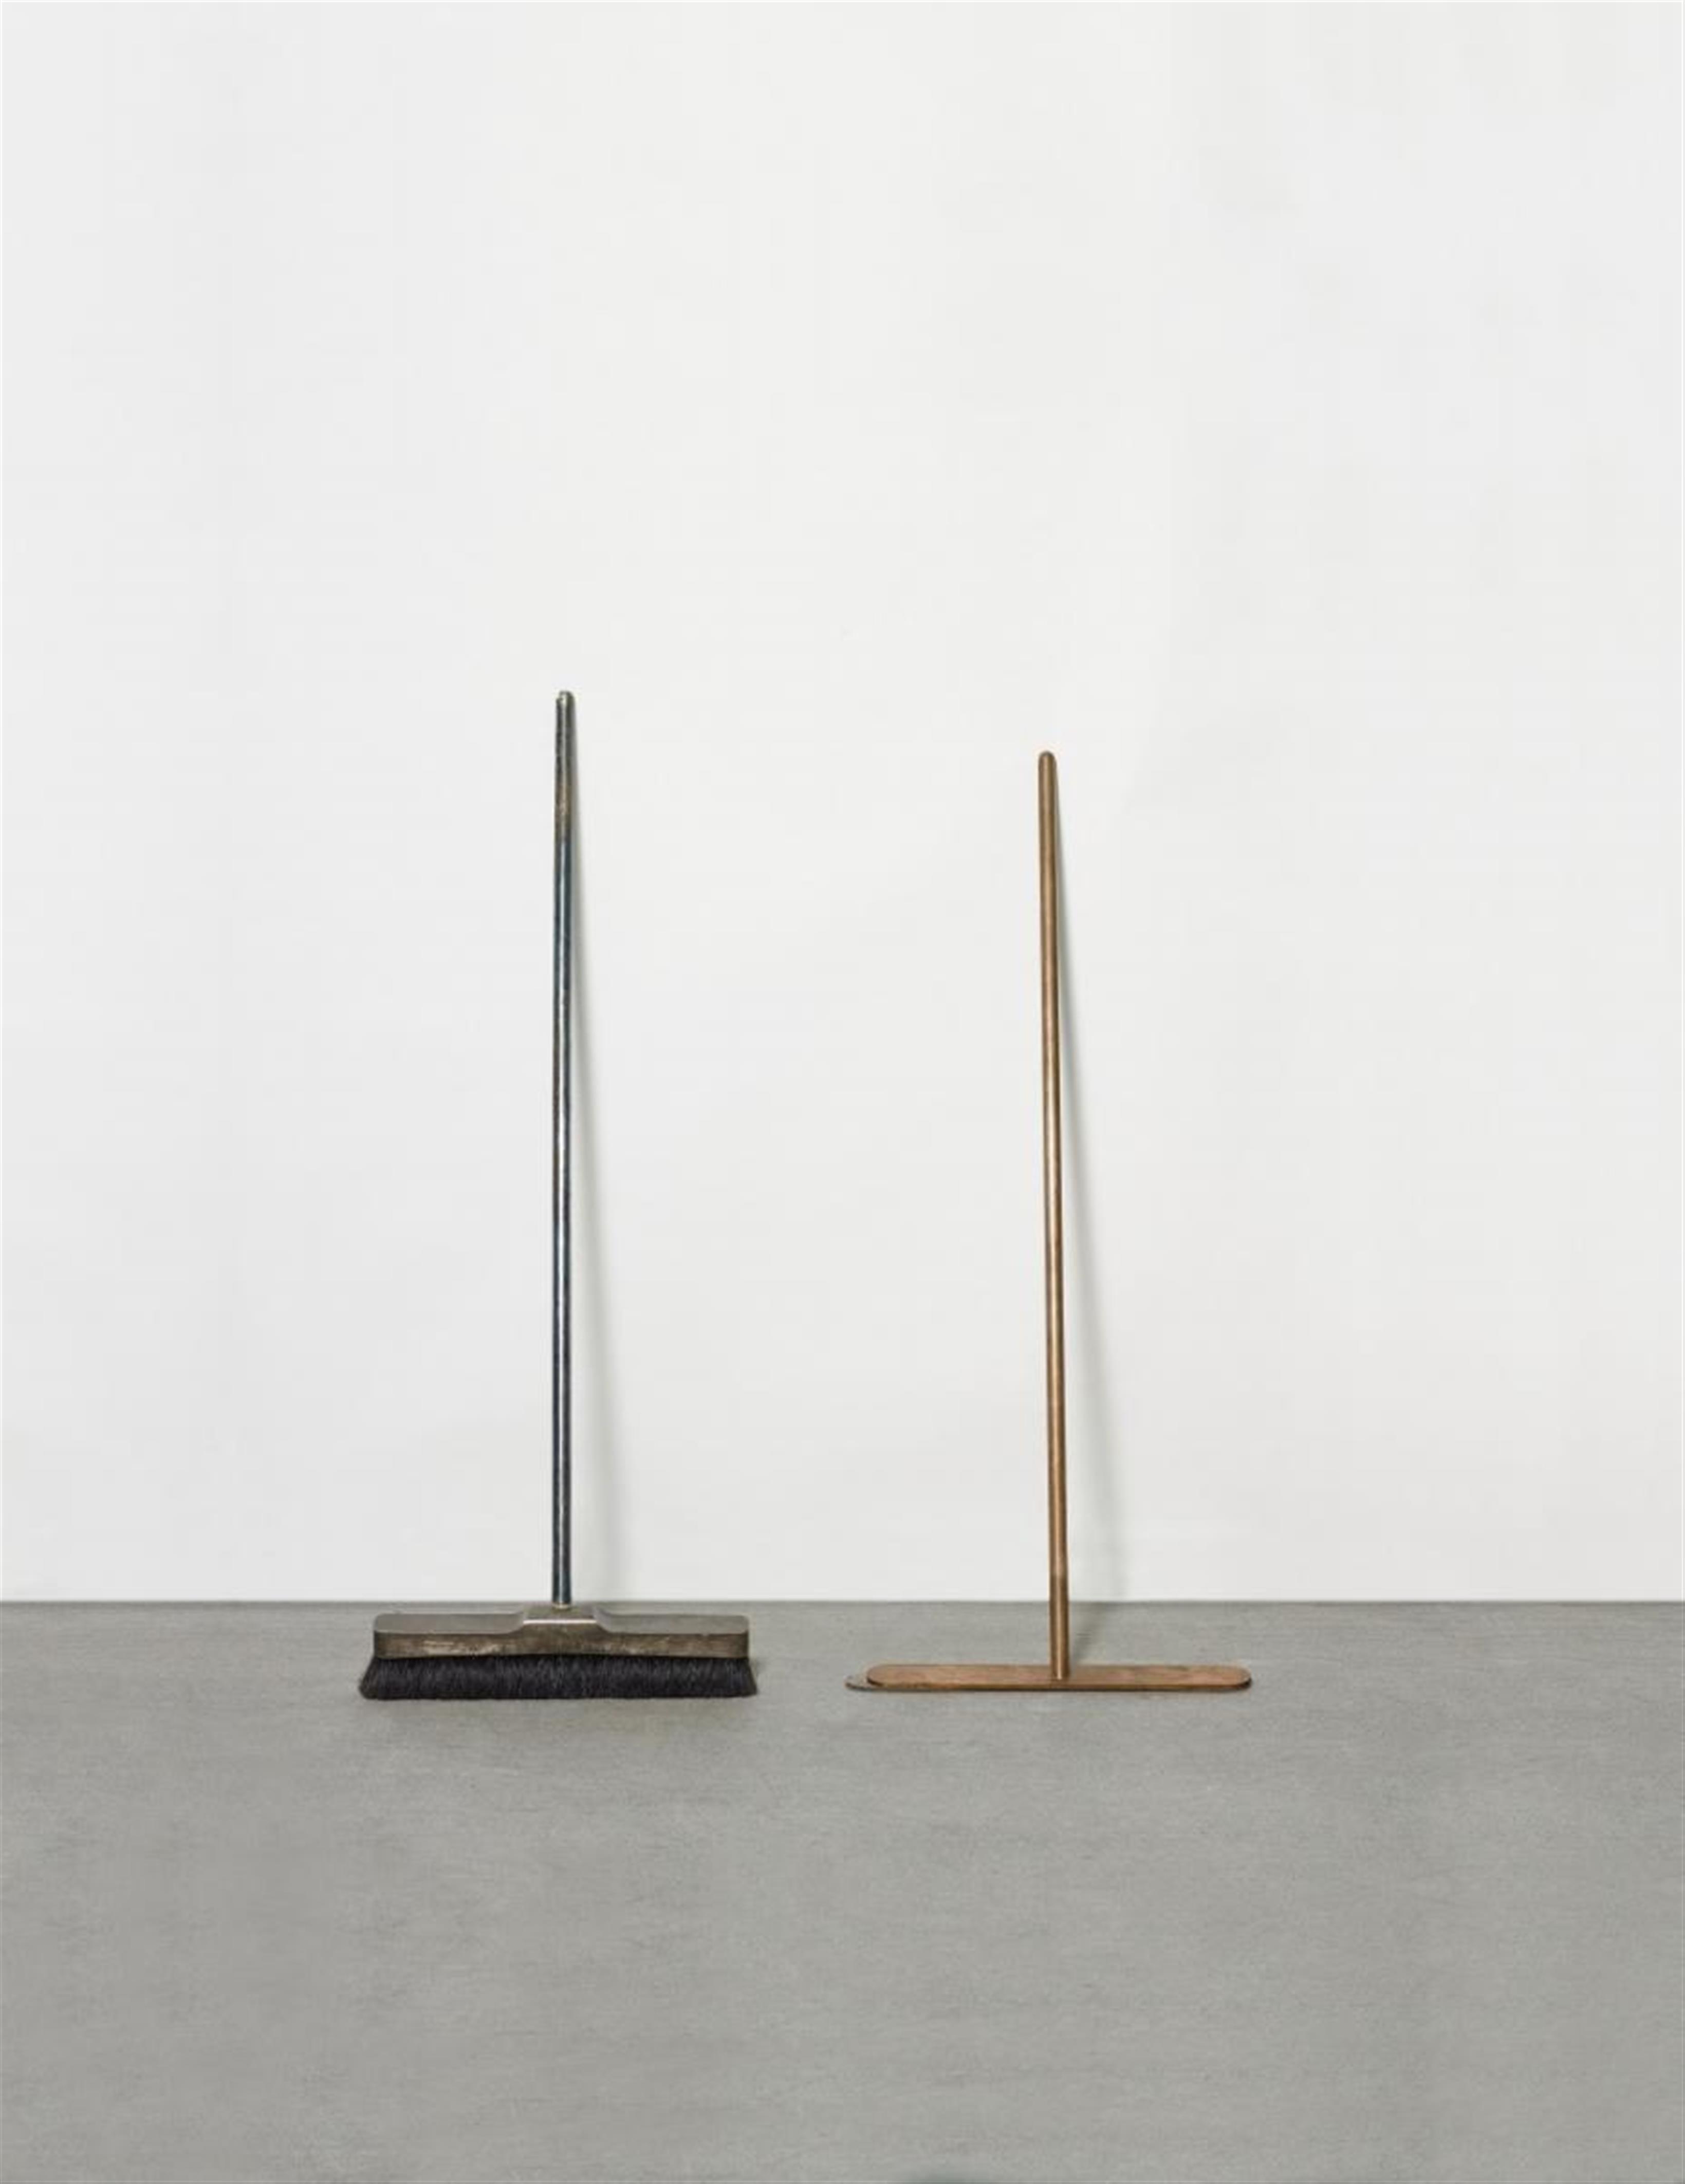 Joseph Beuys - Silberbesen und Besen ohne Haare / Silber Broom and Broom without Hair - image-1